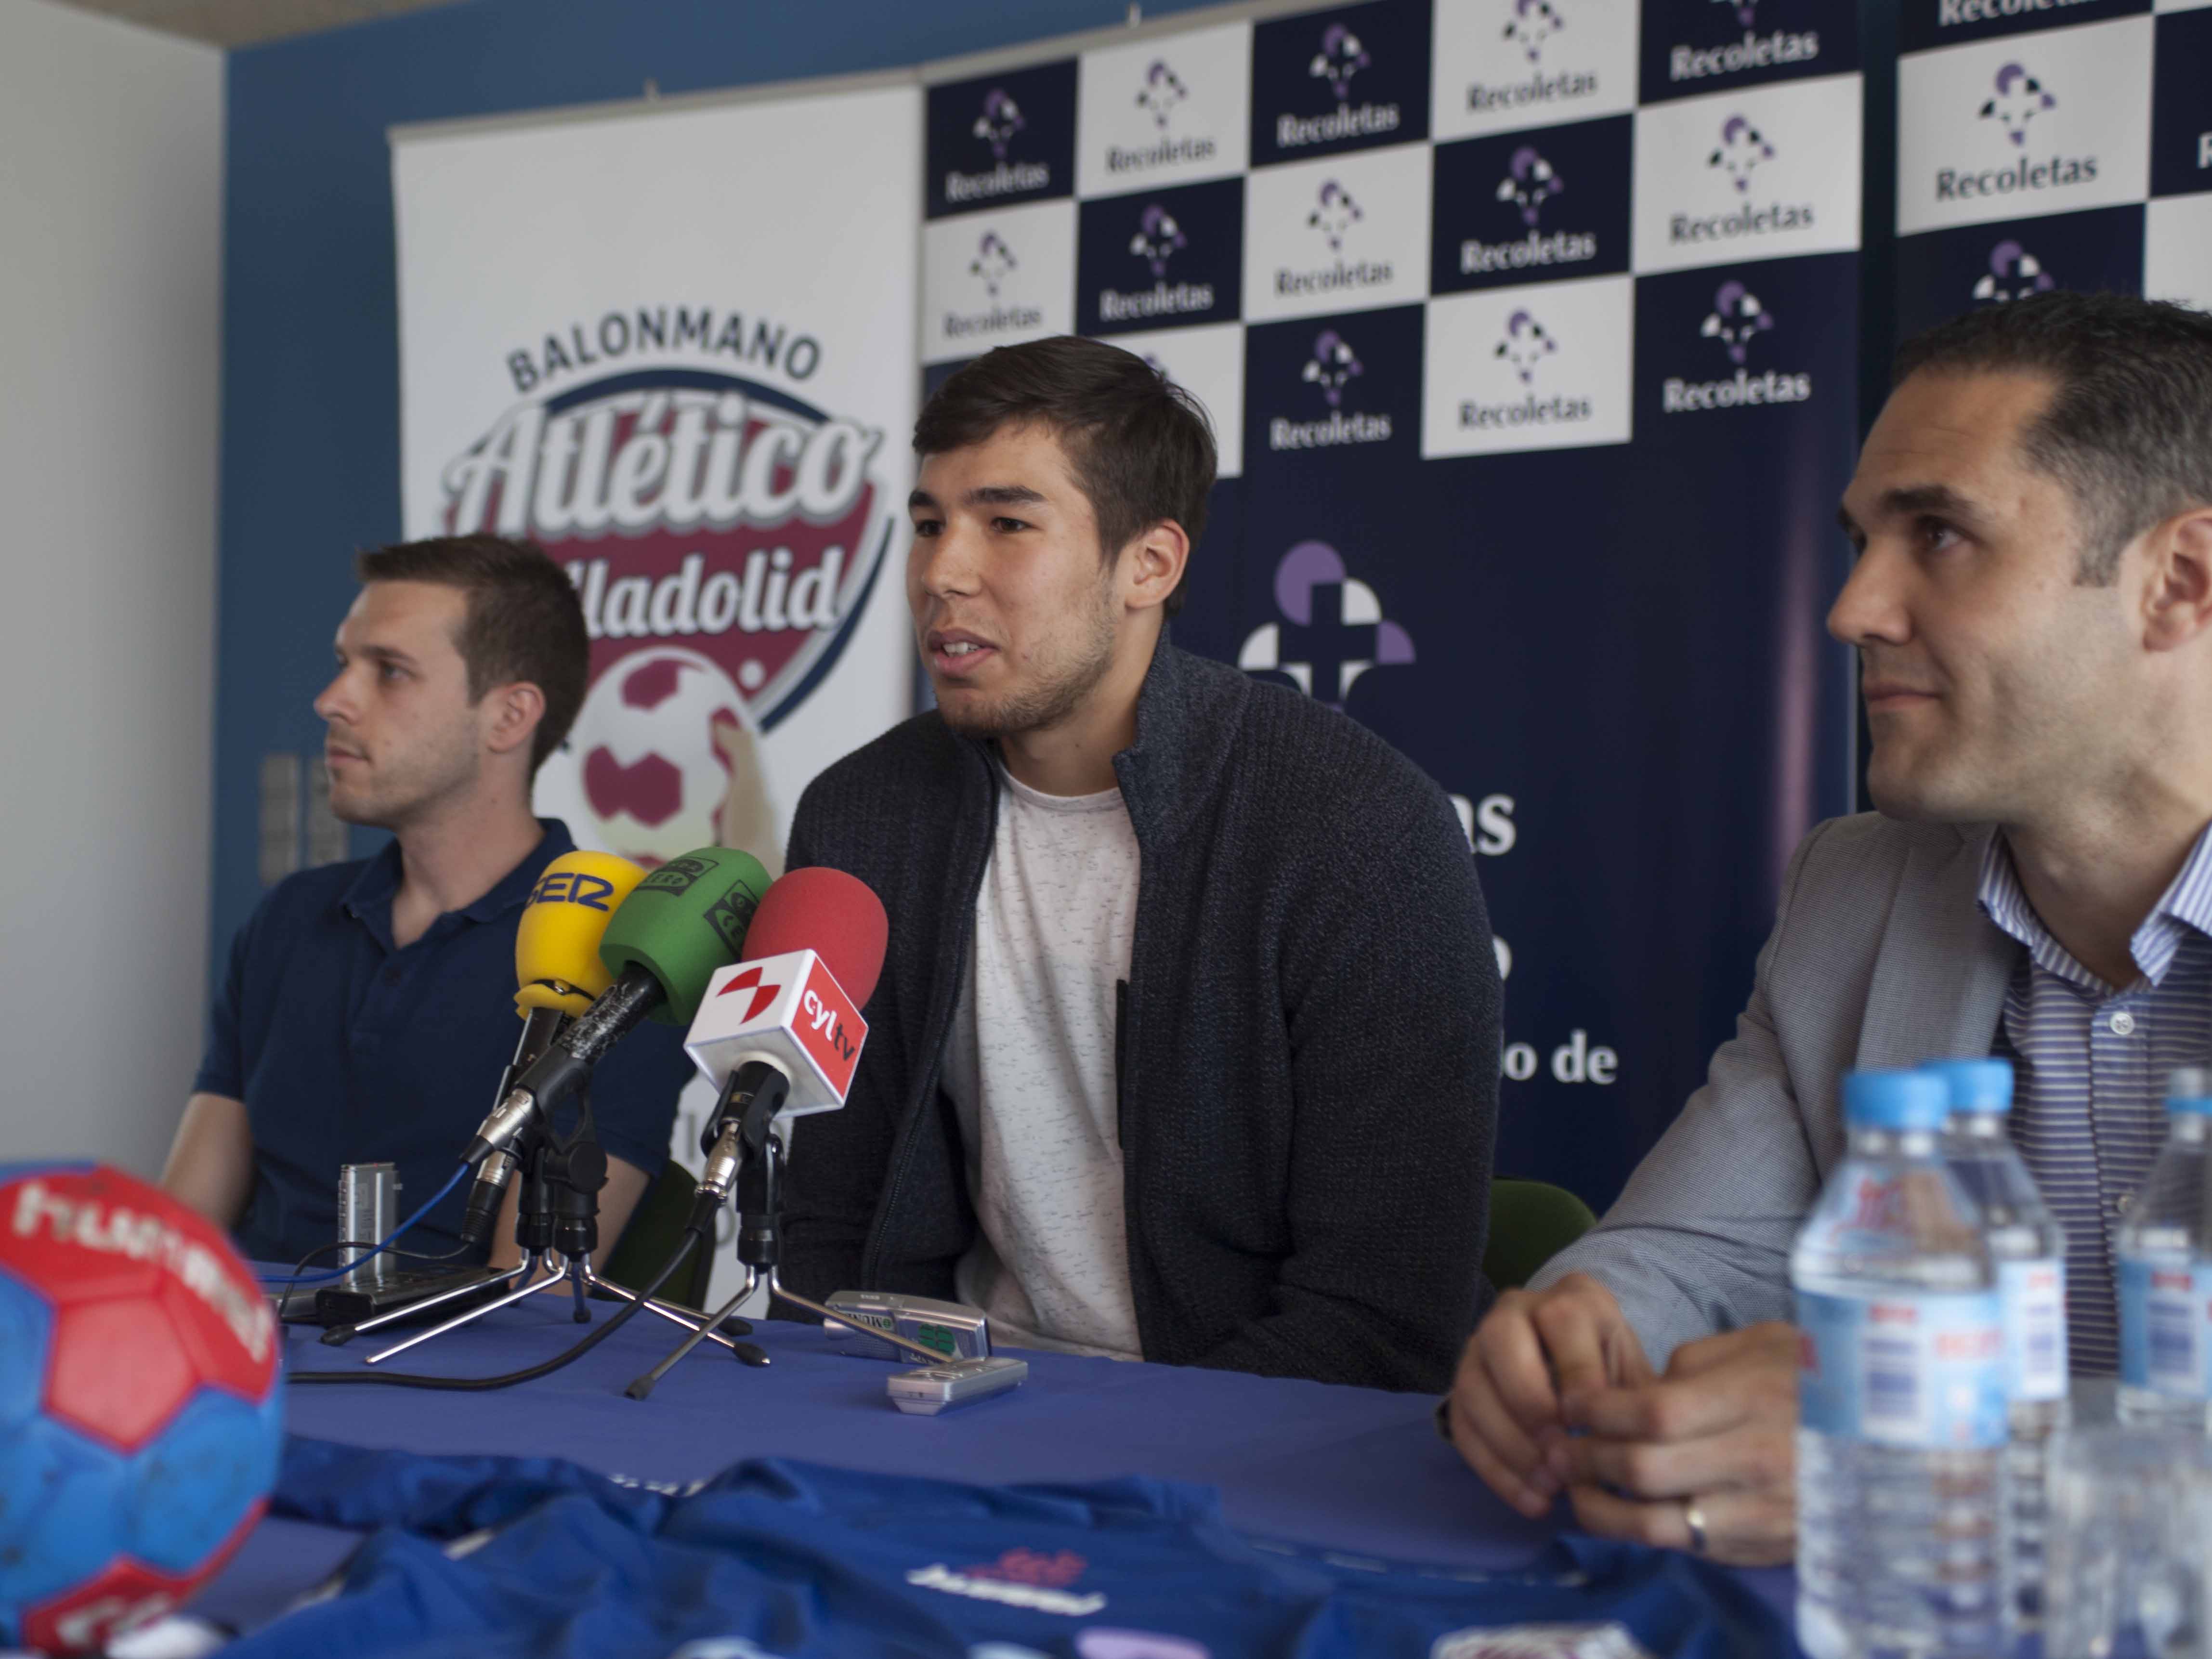 Daniel Dujshebaev: “El Atlético Valladolid Recoletas es un equipo con la mejor afición de España y un lugar muy interesante para jugar, aprender y seguir progresando” | Galería 1 / 3